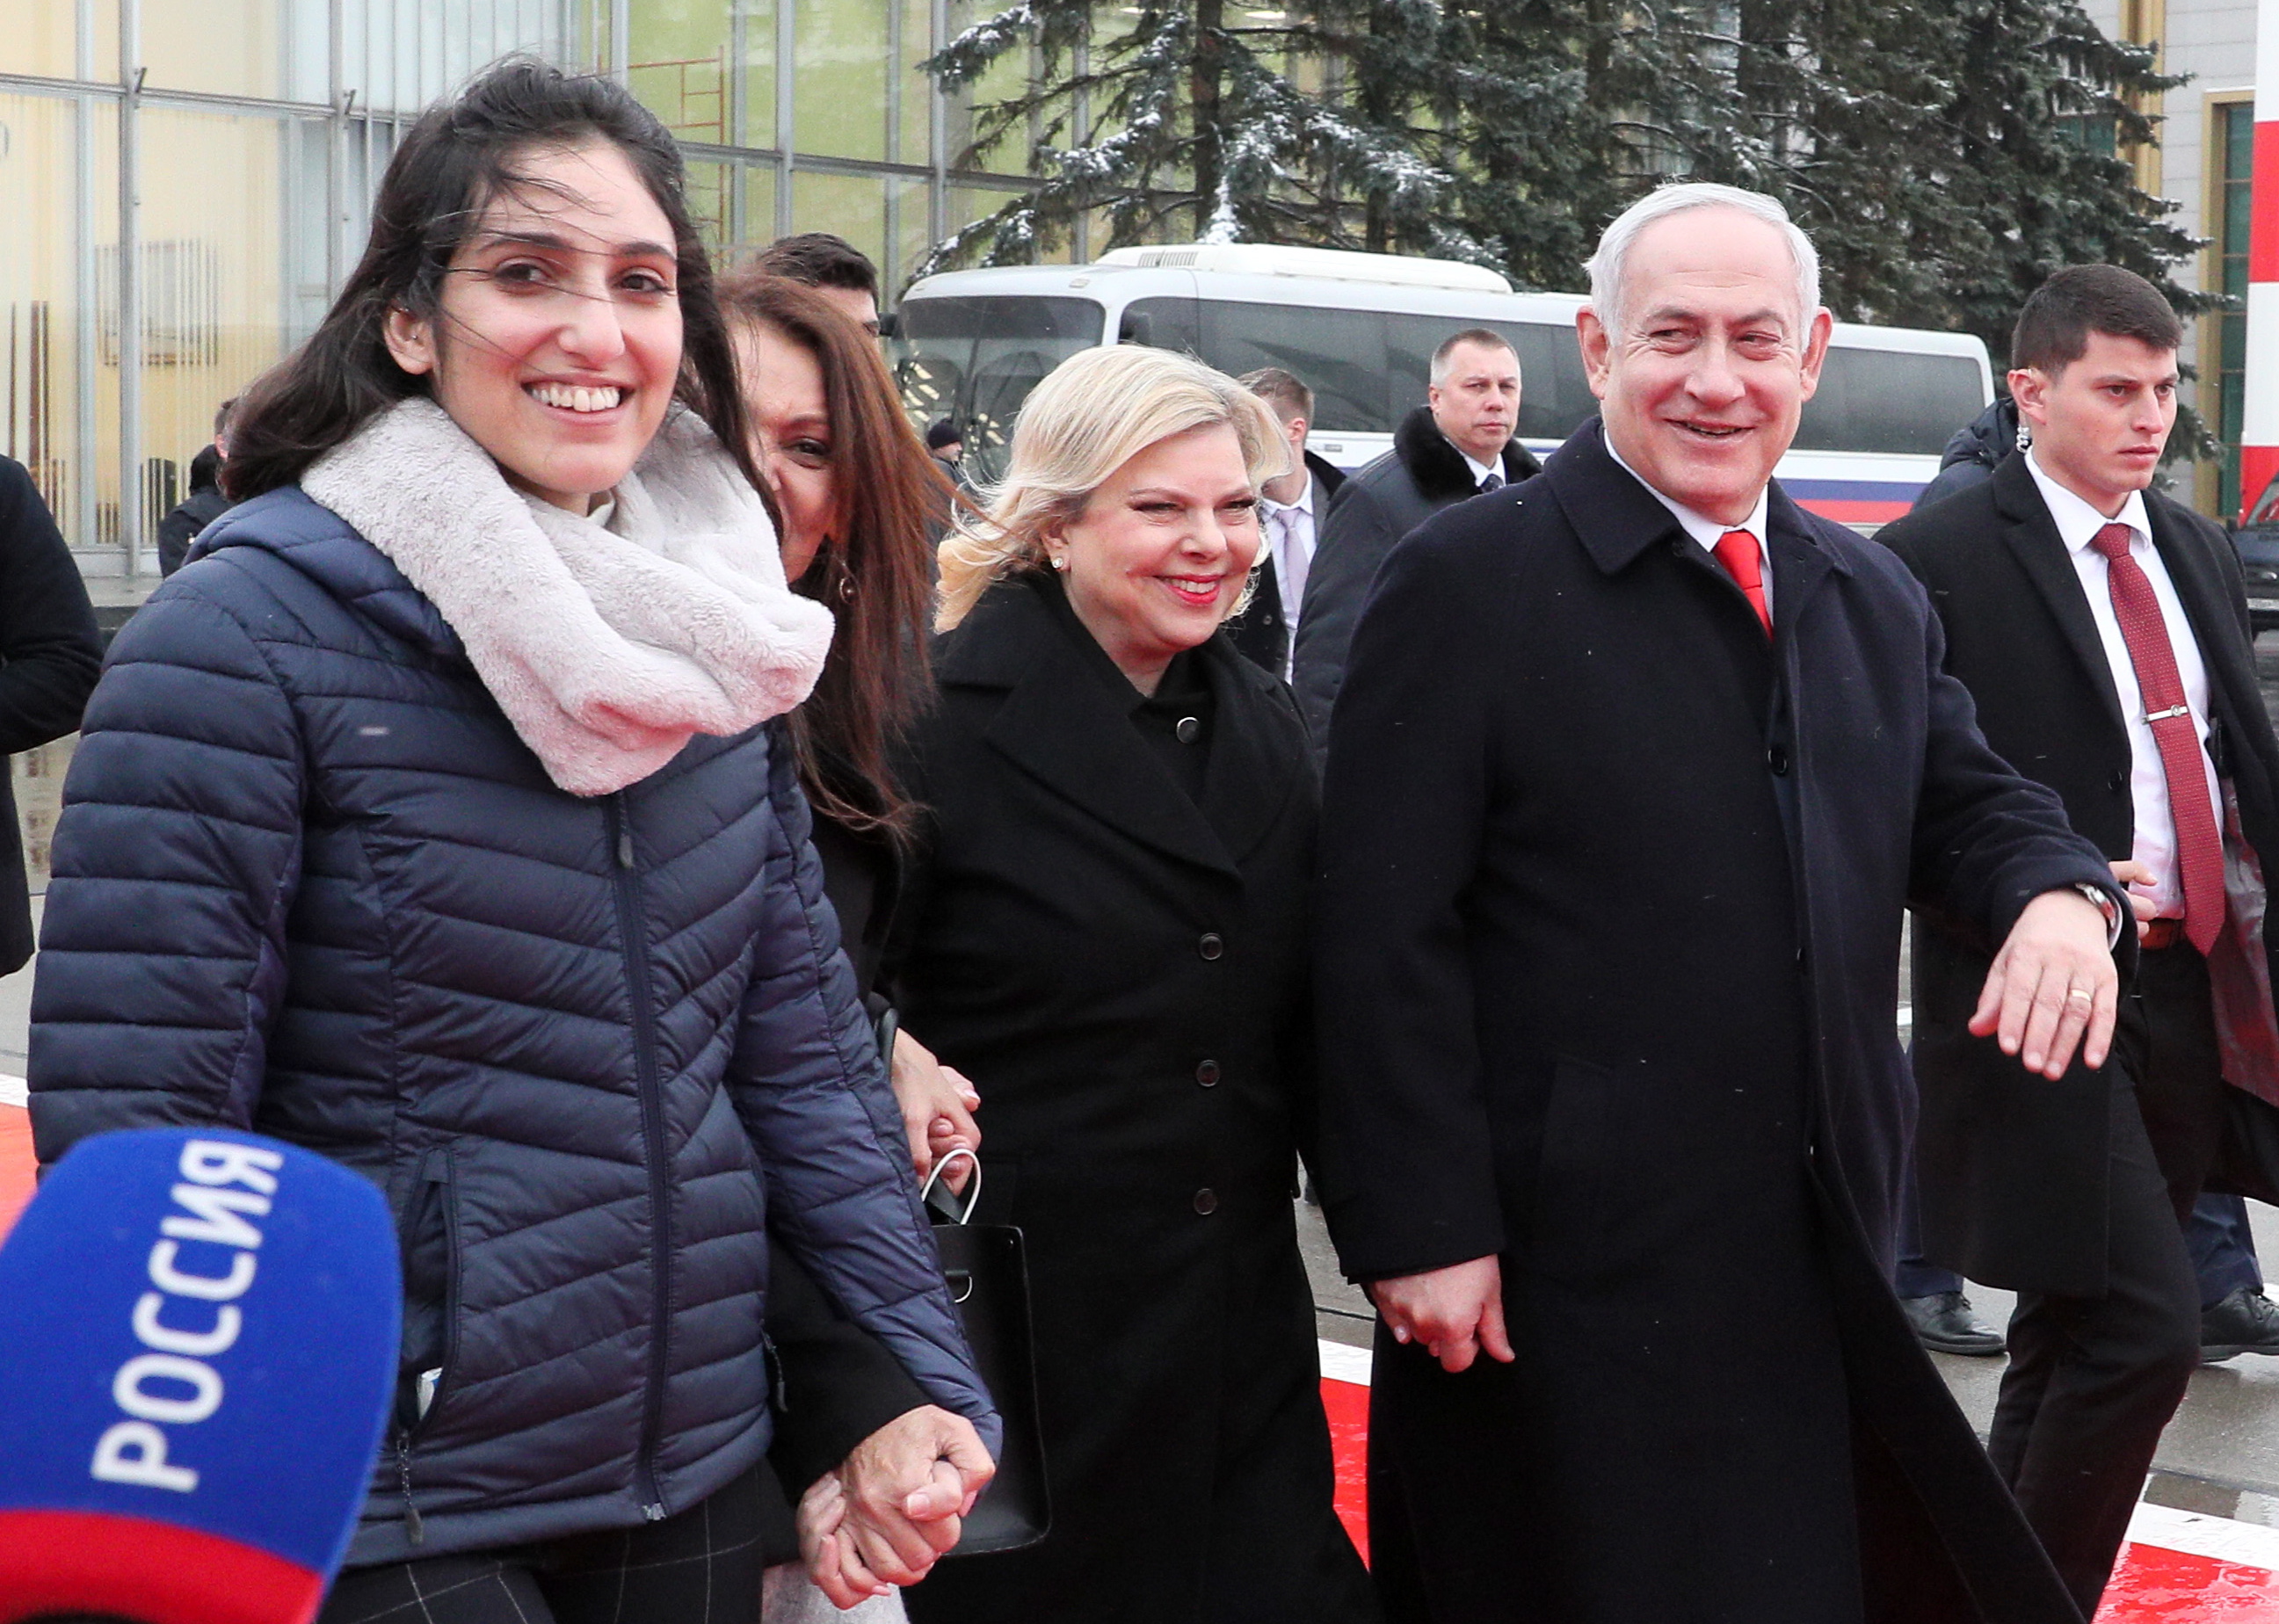 Вести израиля на русском языке. Иссахар израильтянка. Помилованная президентом России израильтянка Наама Иссахар.